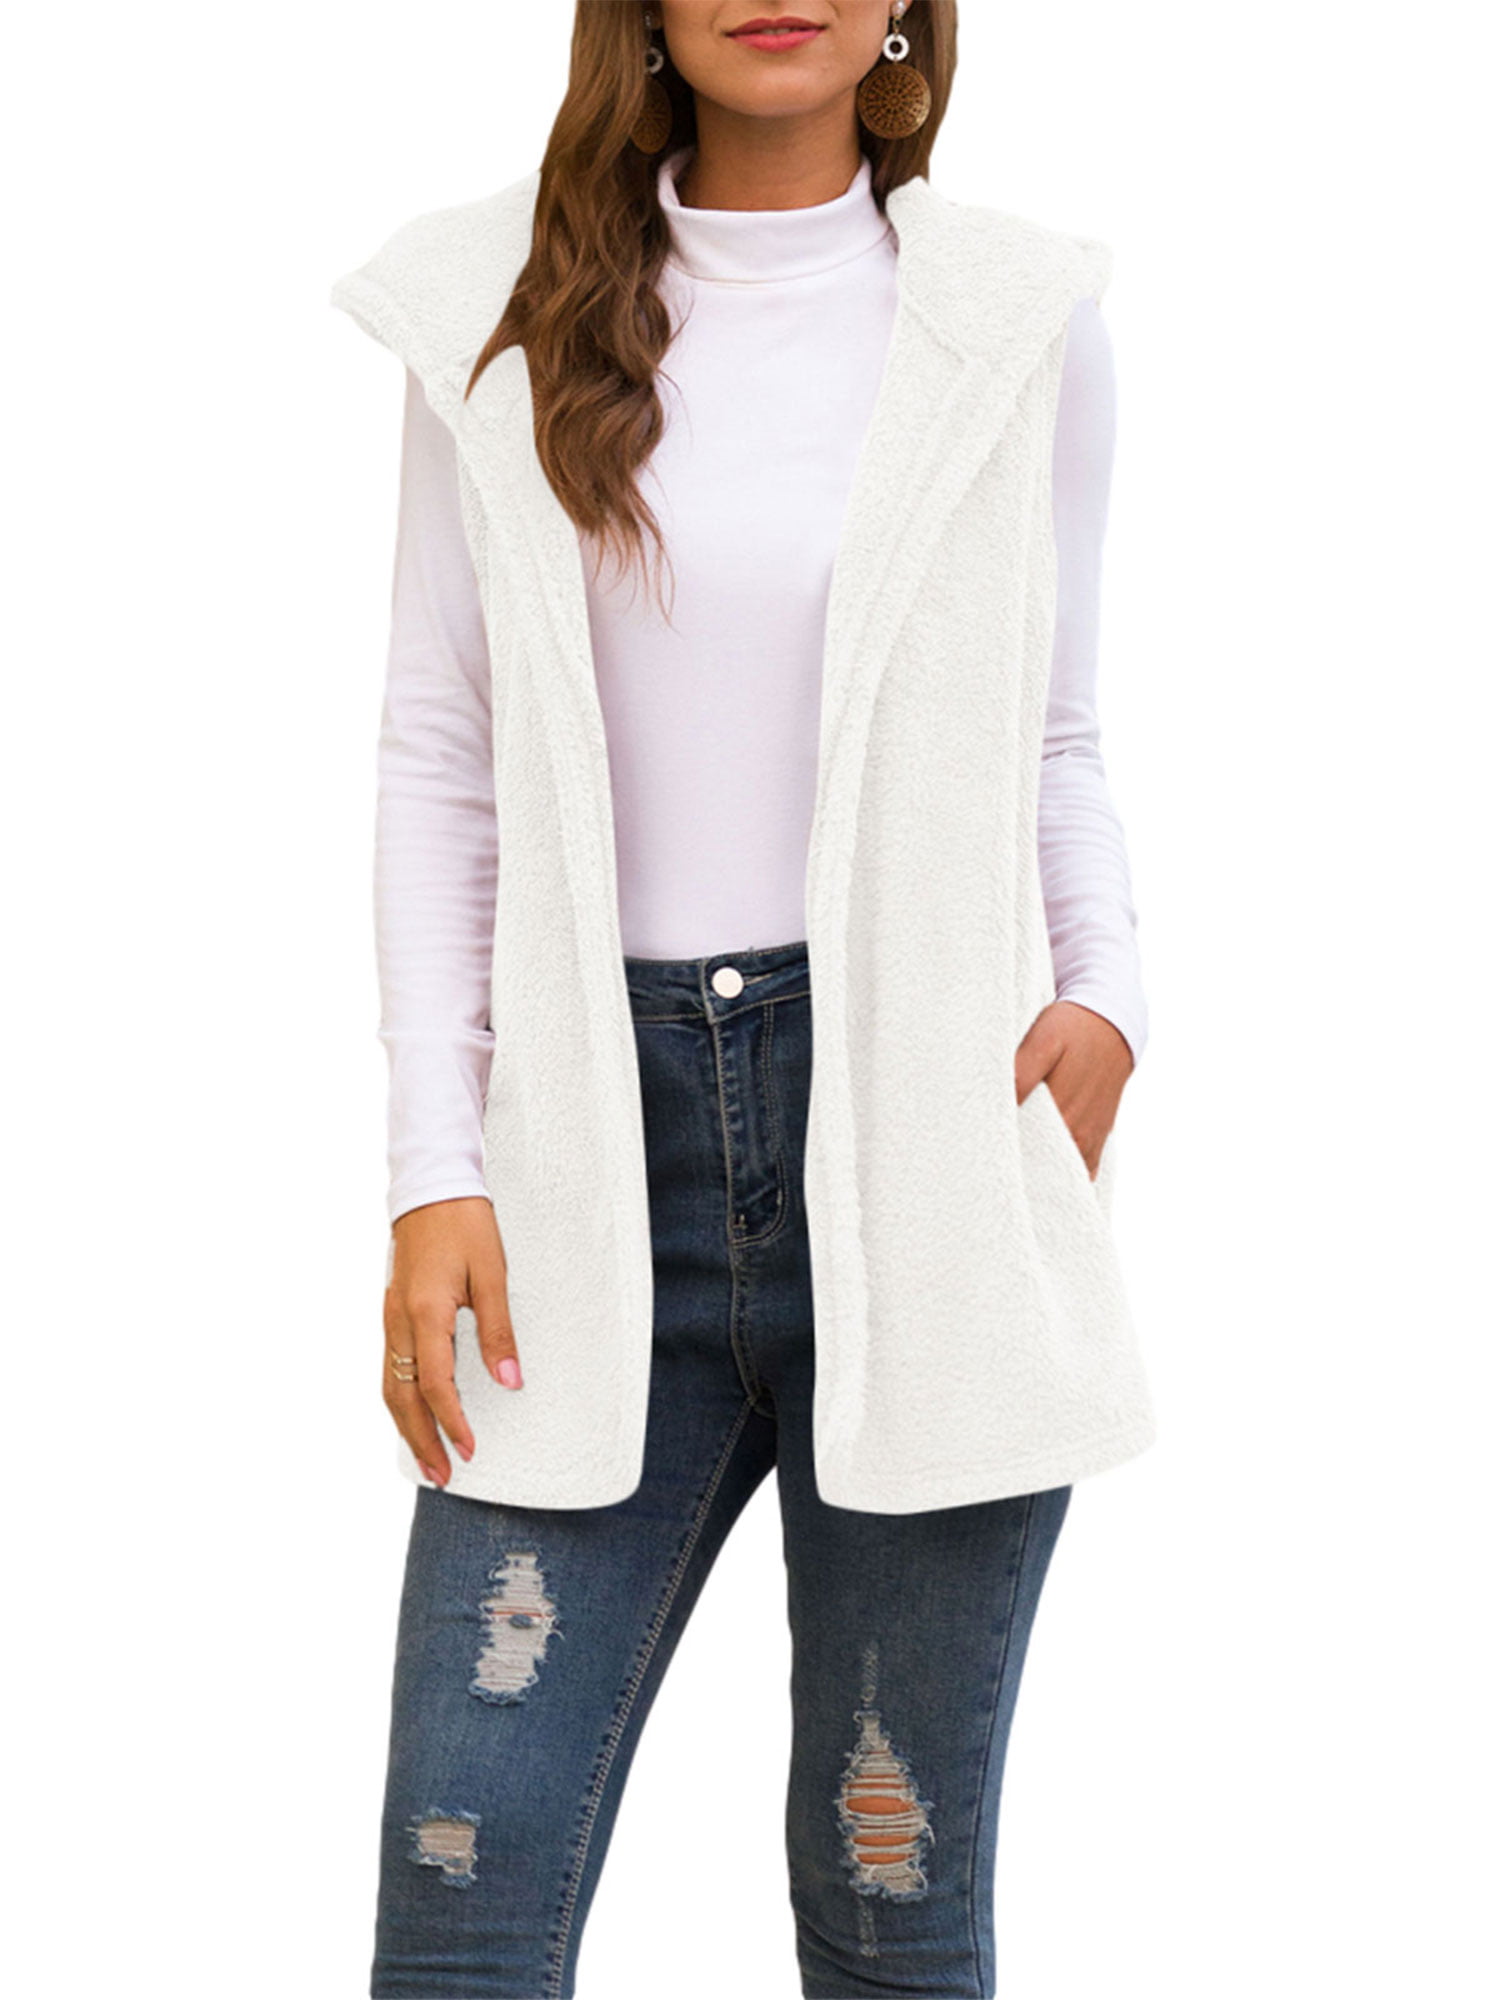 OutTop Kids Girls Trendy Faux Fur Vest Waistcoat Warm Sleeveless Cardigans Fuzzy Lightweight Fur Jacket Outwear